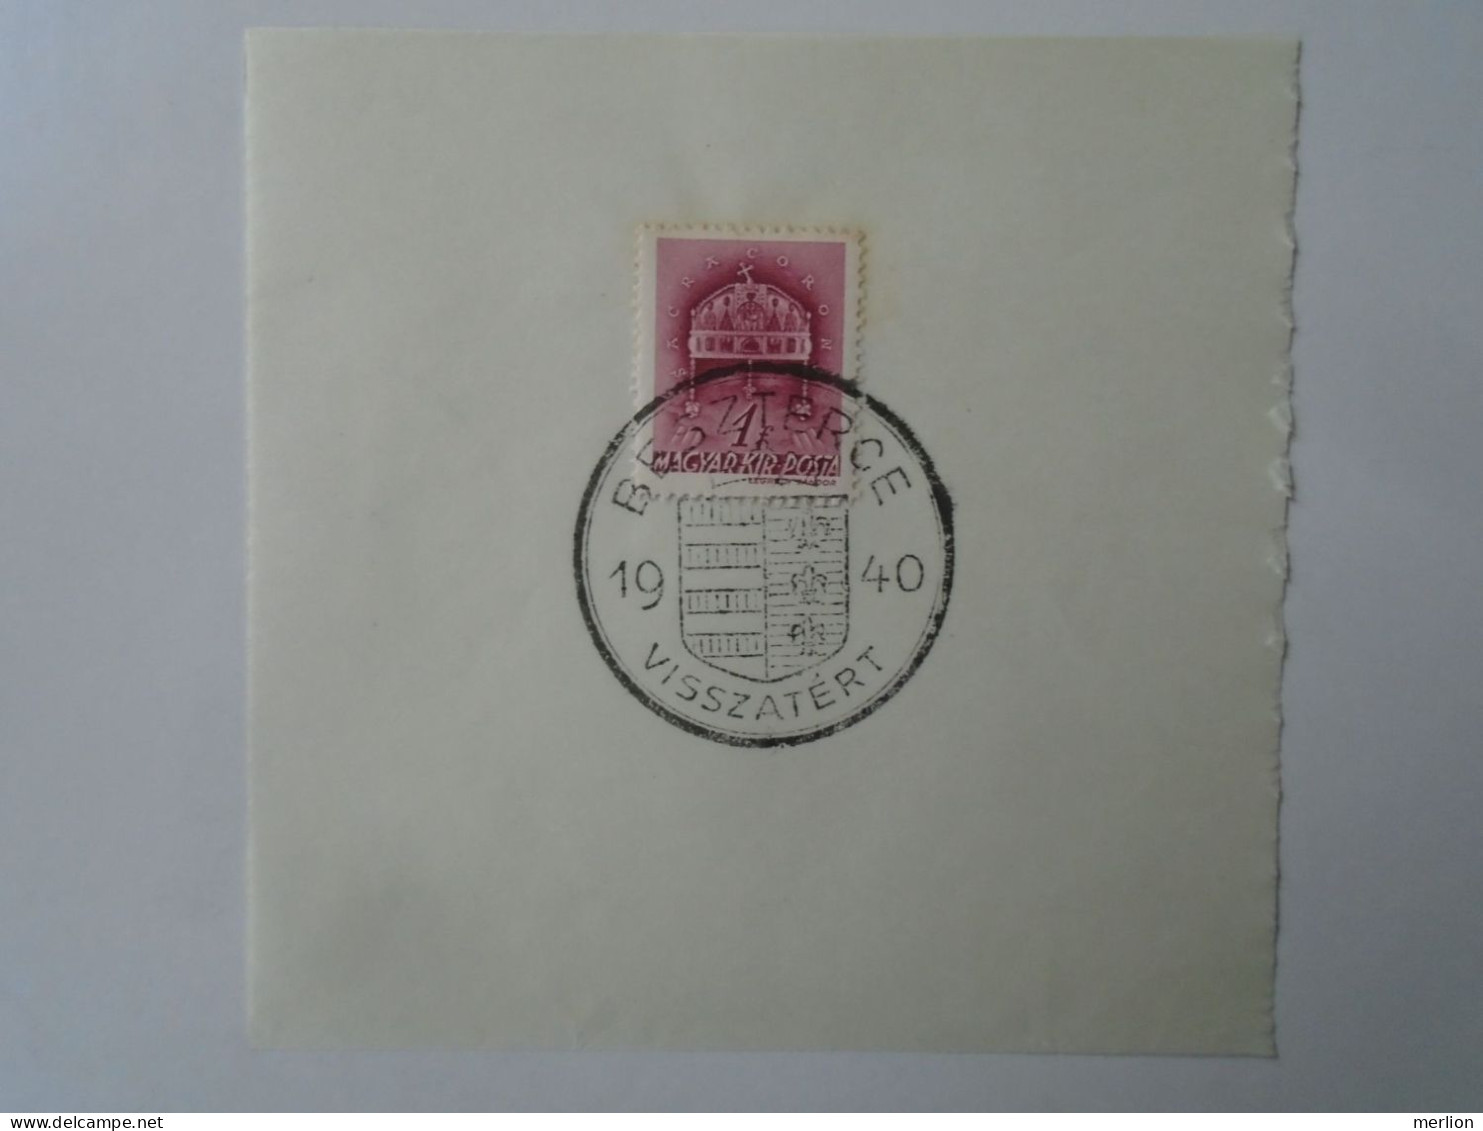 ZA451.64  Hungary - Beszterce  - Visszatért -Commemorative Postmark 1940 - Postmark Collection